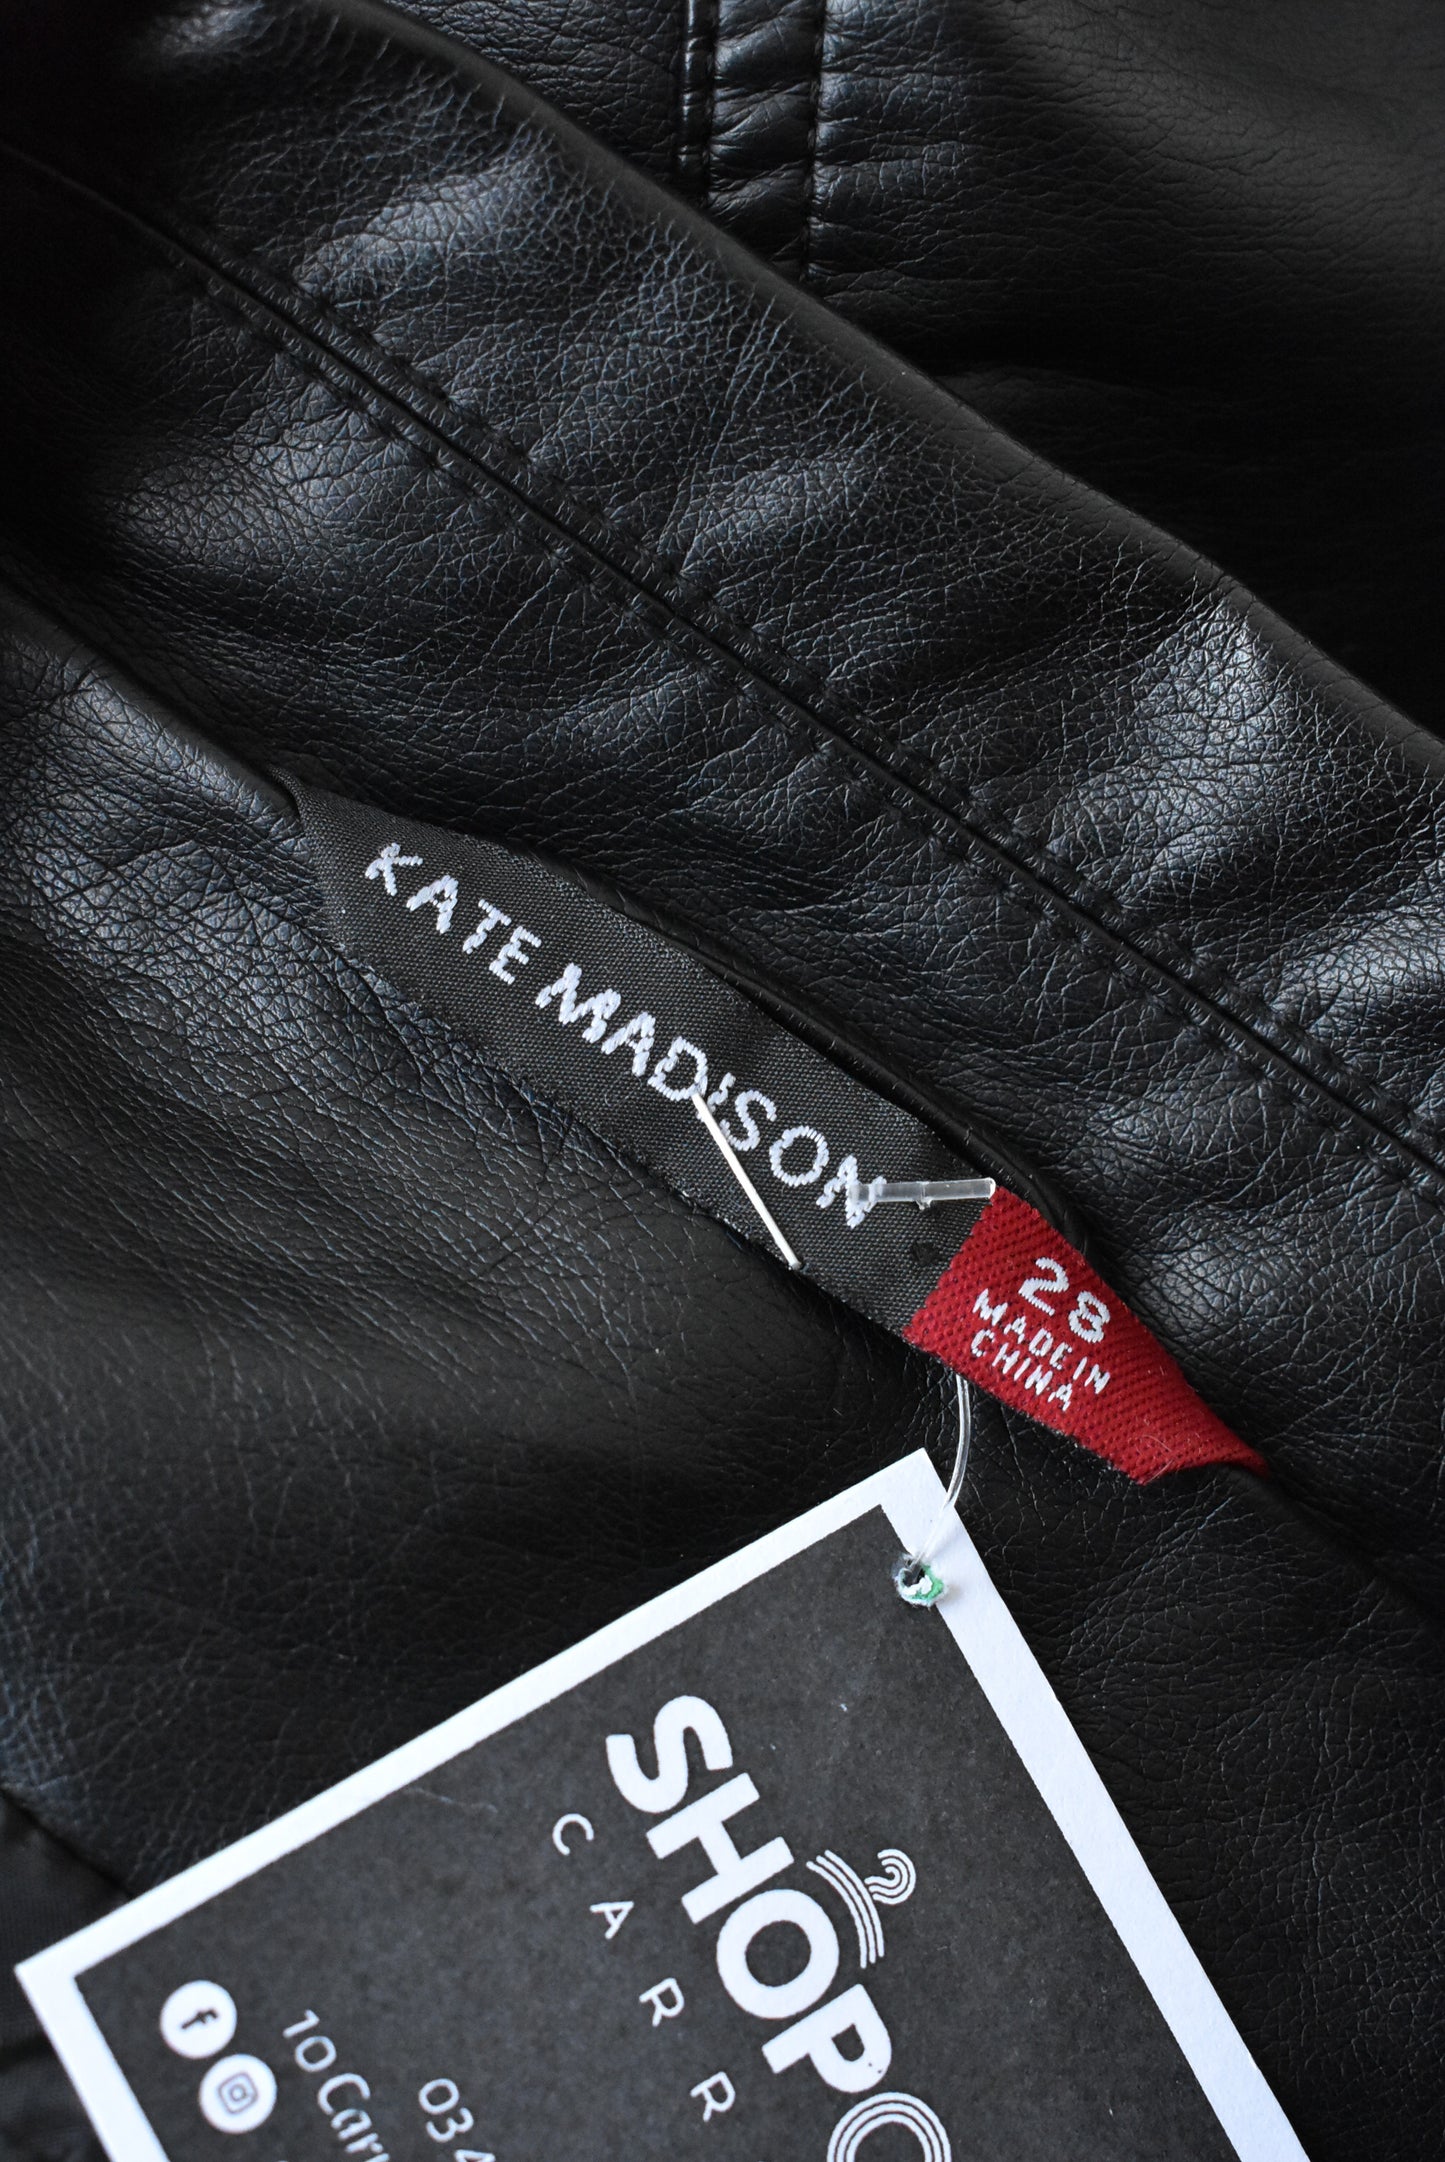 Kate Madison black synthetic jacket, Size plus (28)